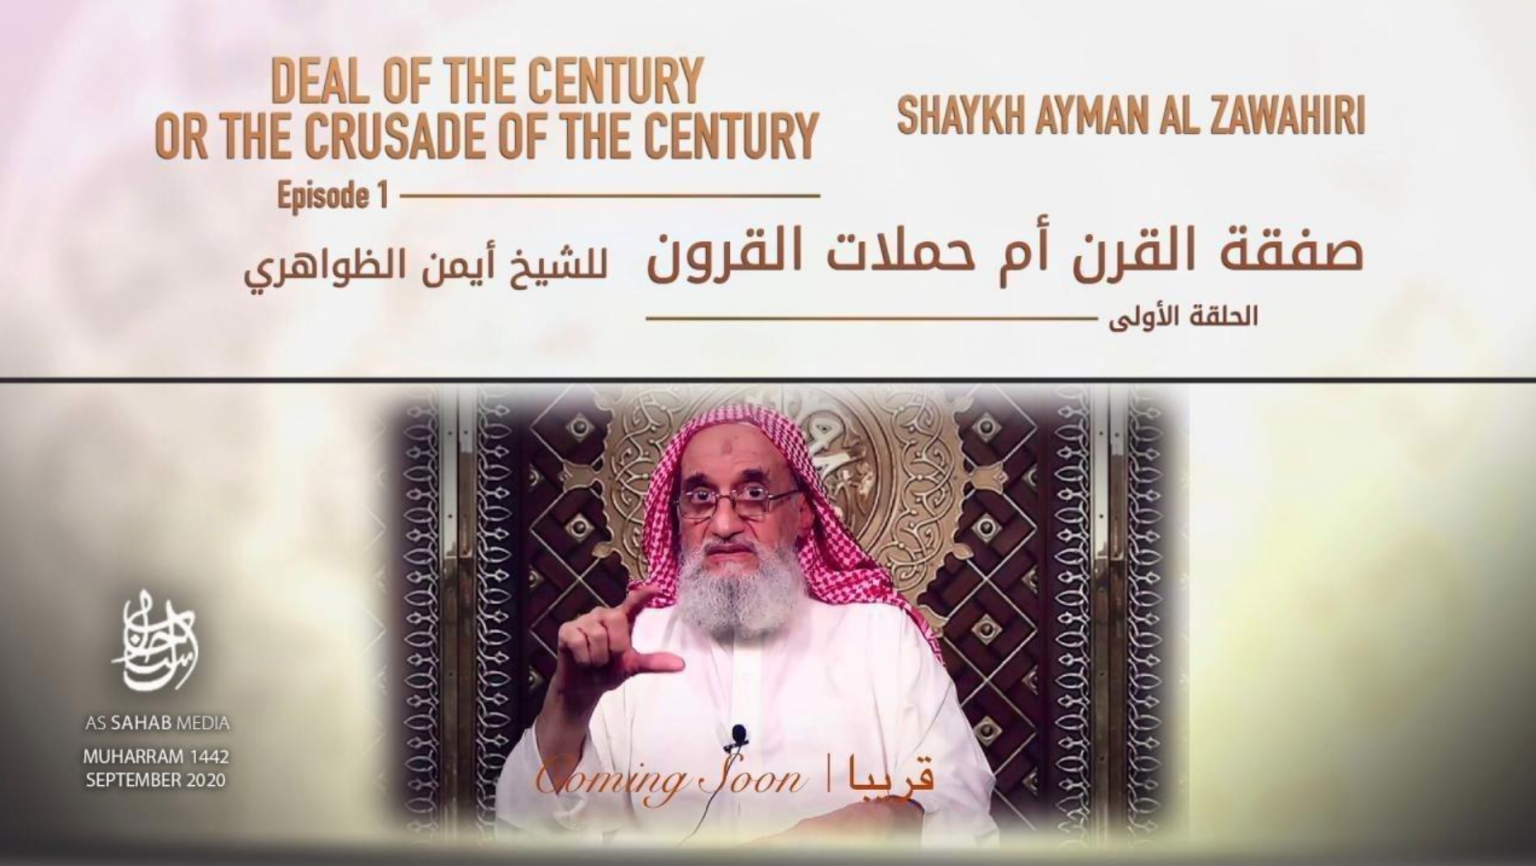 20-09-11-Zawahiri-message-image-1536x866